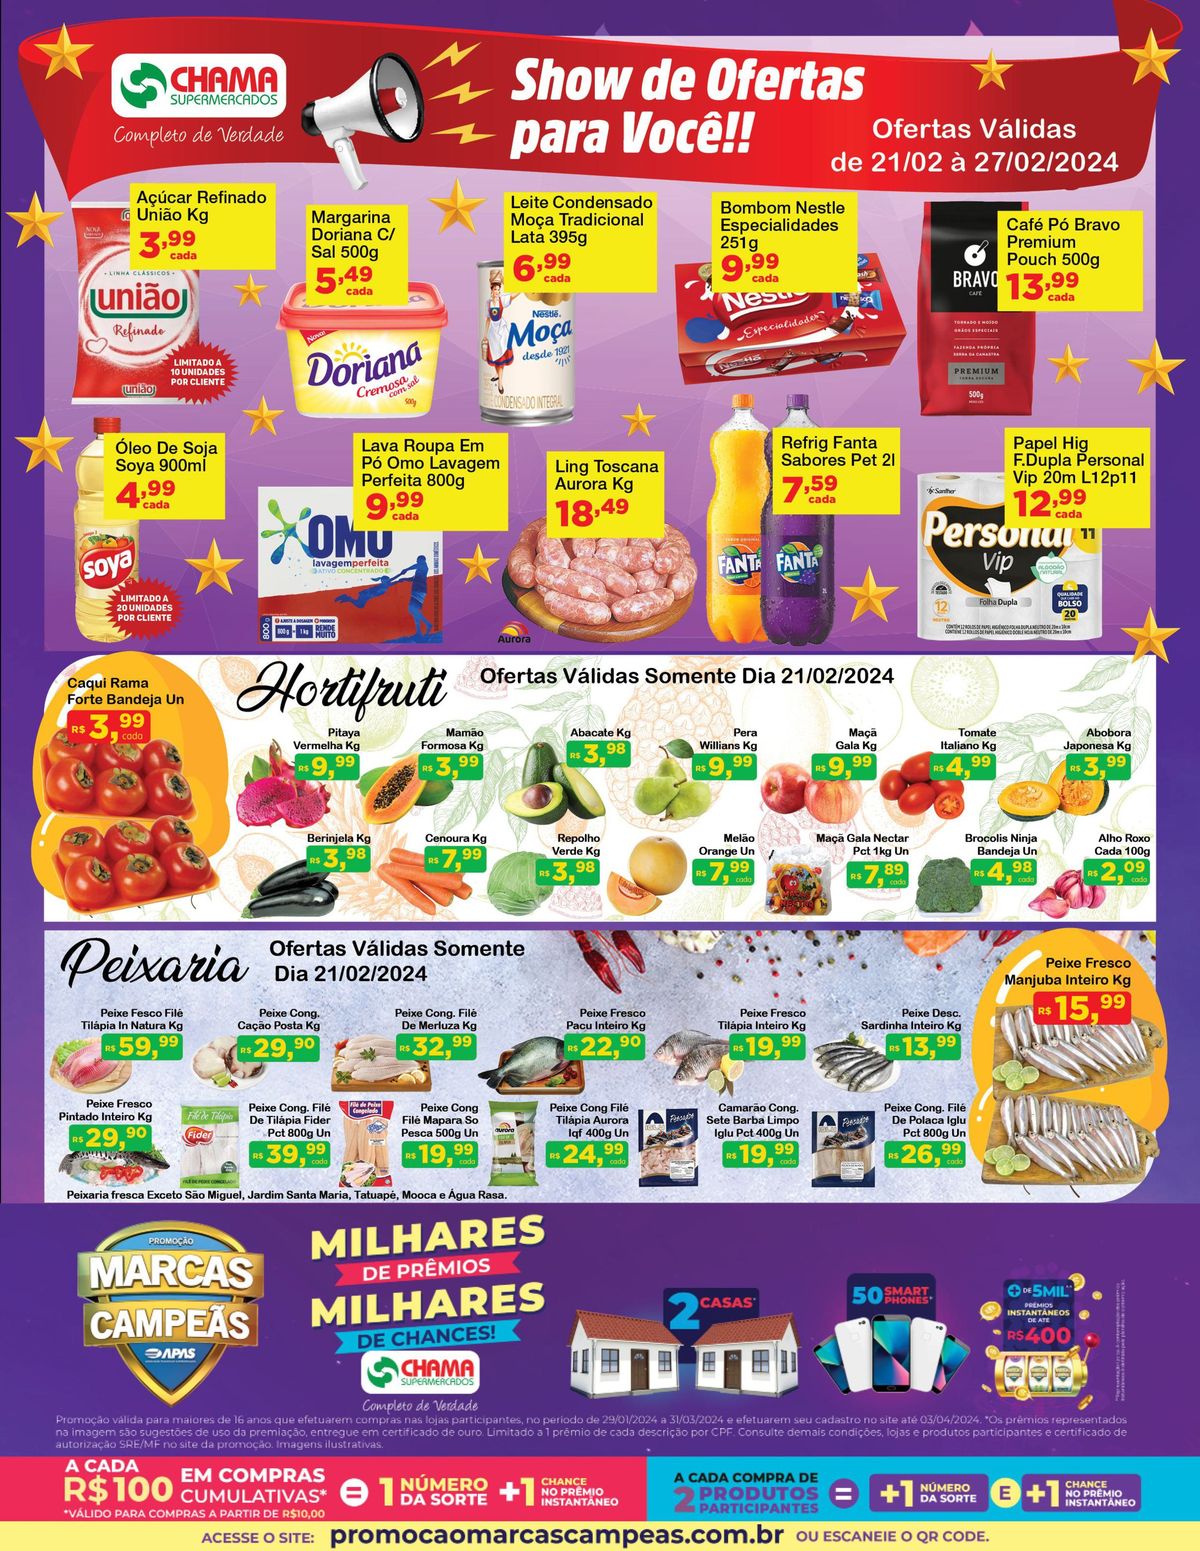 Ofertas de Supermercado: Açúcar Refinado, Leite Condensado, Margarina e muito mais!